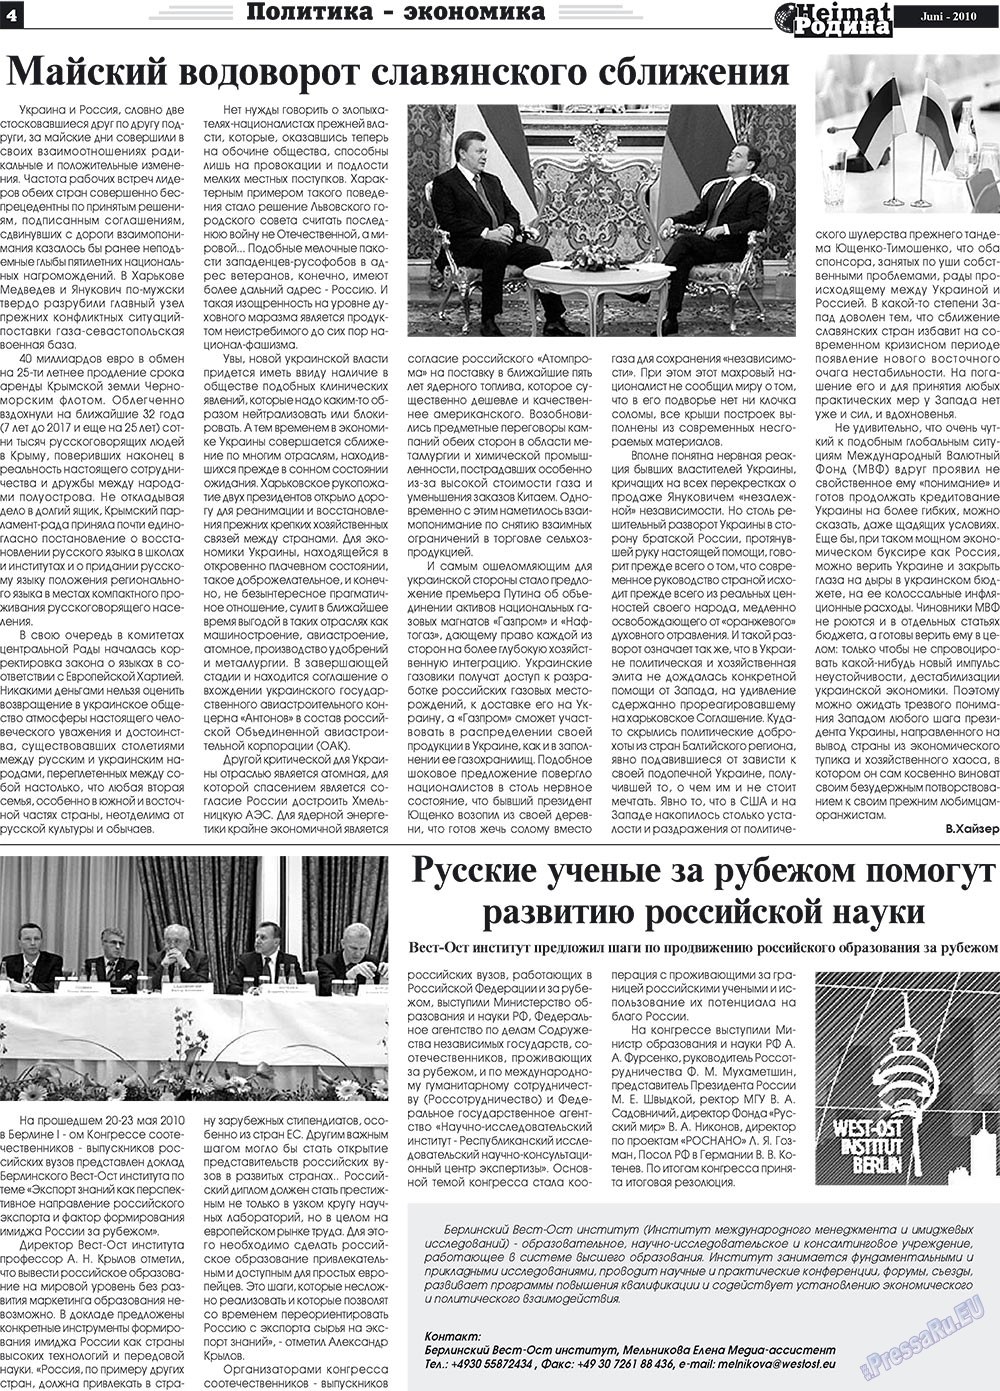 Heimat-Родина (газета). 2010 год, номер 6, стр. 4